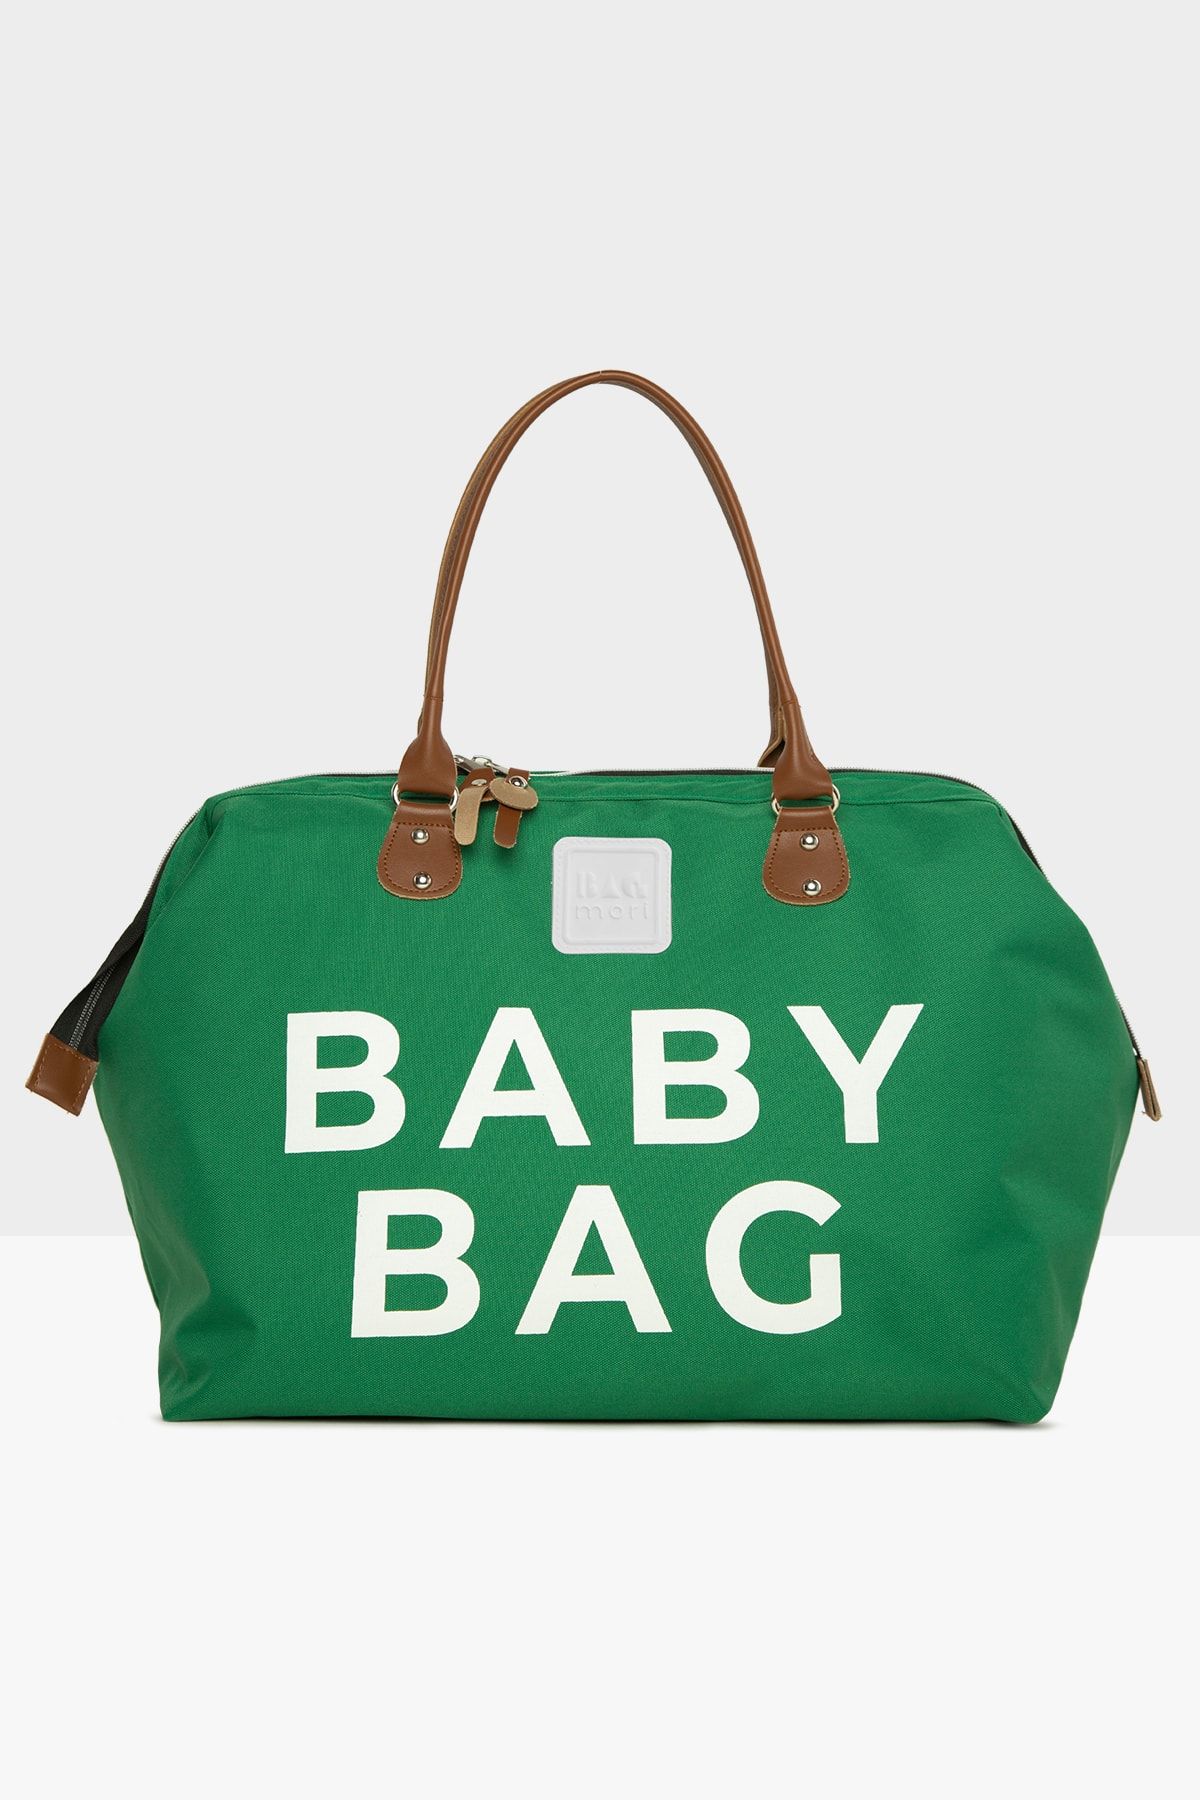 Bagmori Koyu Yeşil Baby Bag Baskılı Bebek Bakım Çantası M000002169